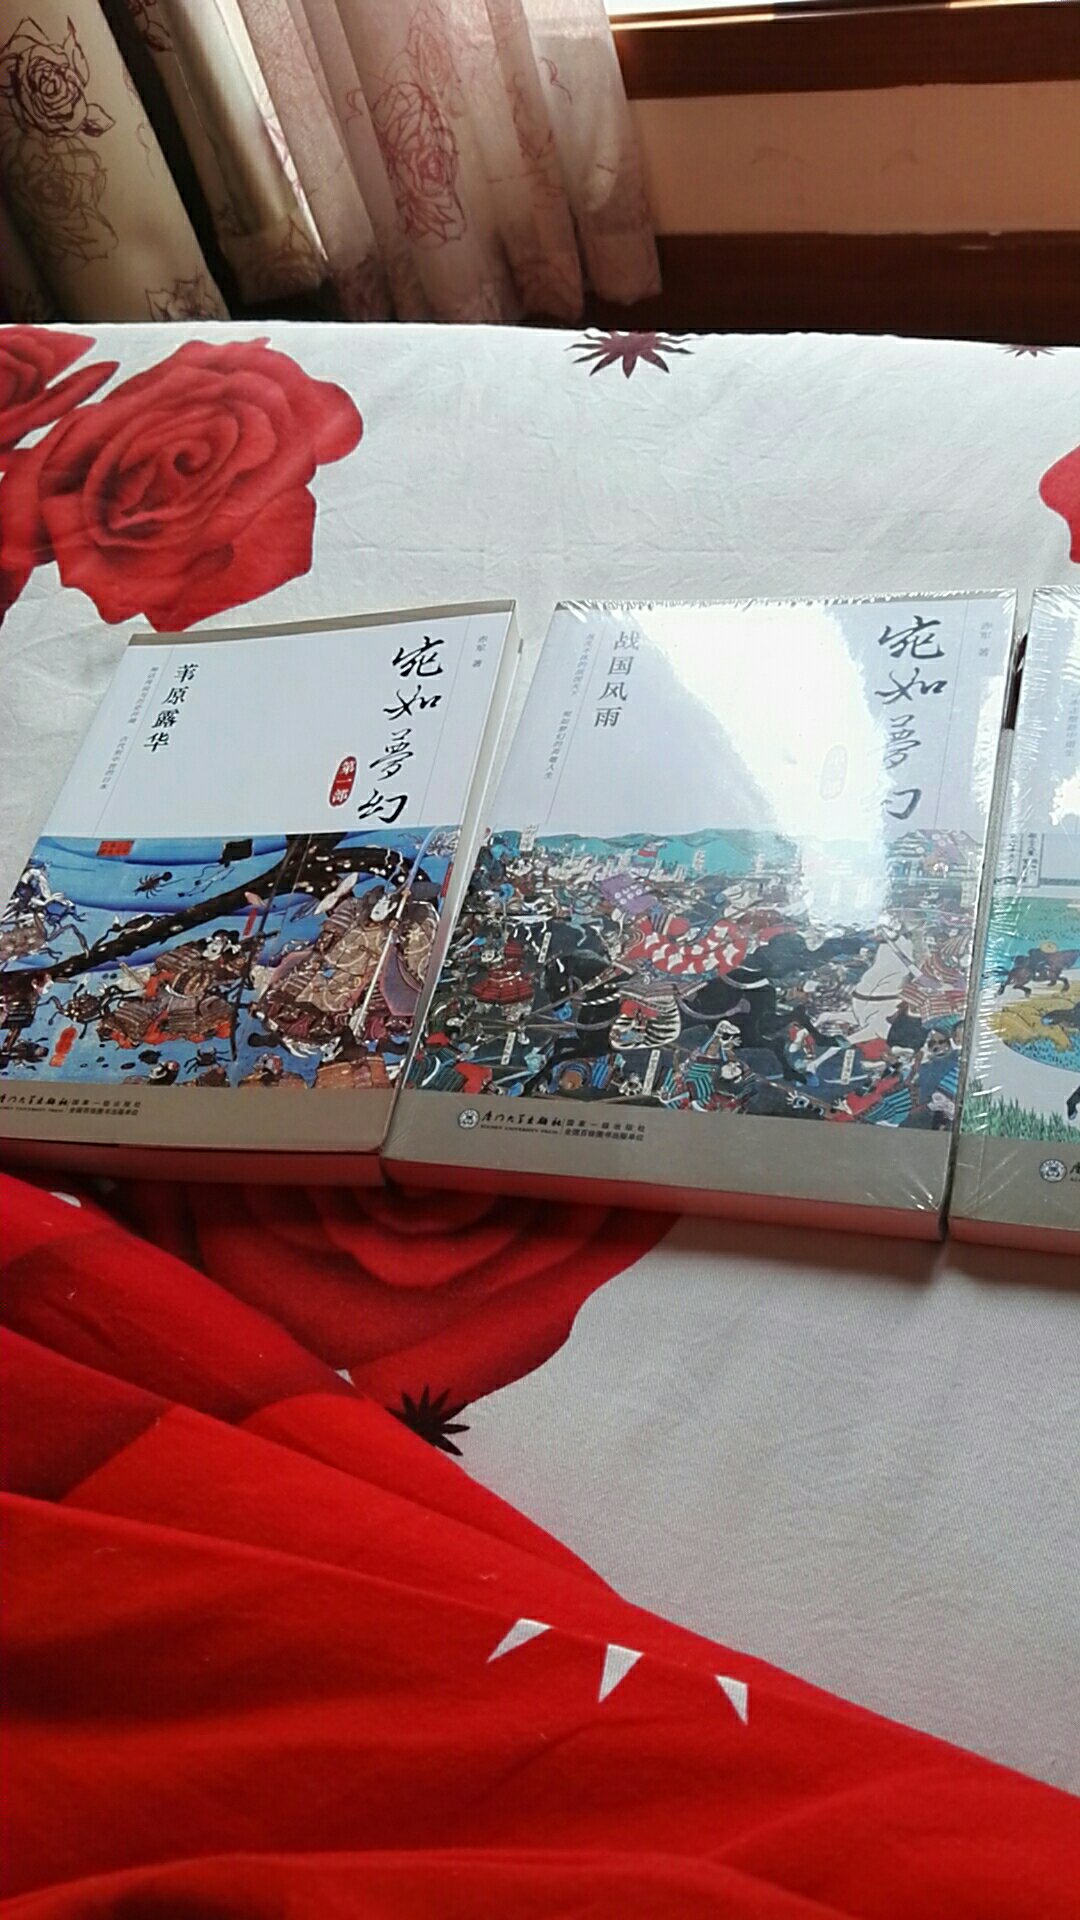 对日本战国前后的历史比较感兴趣，先前买过赤军的书，应该不错。